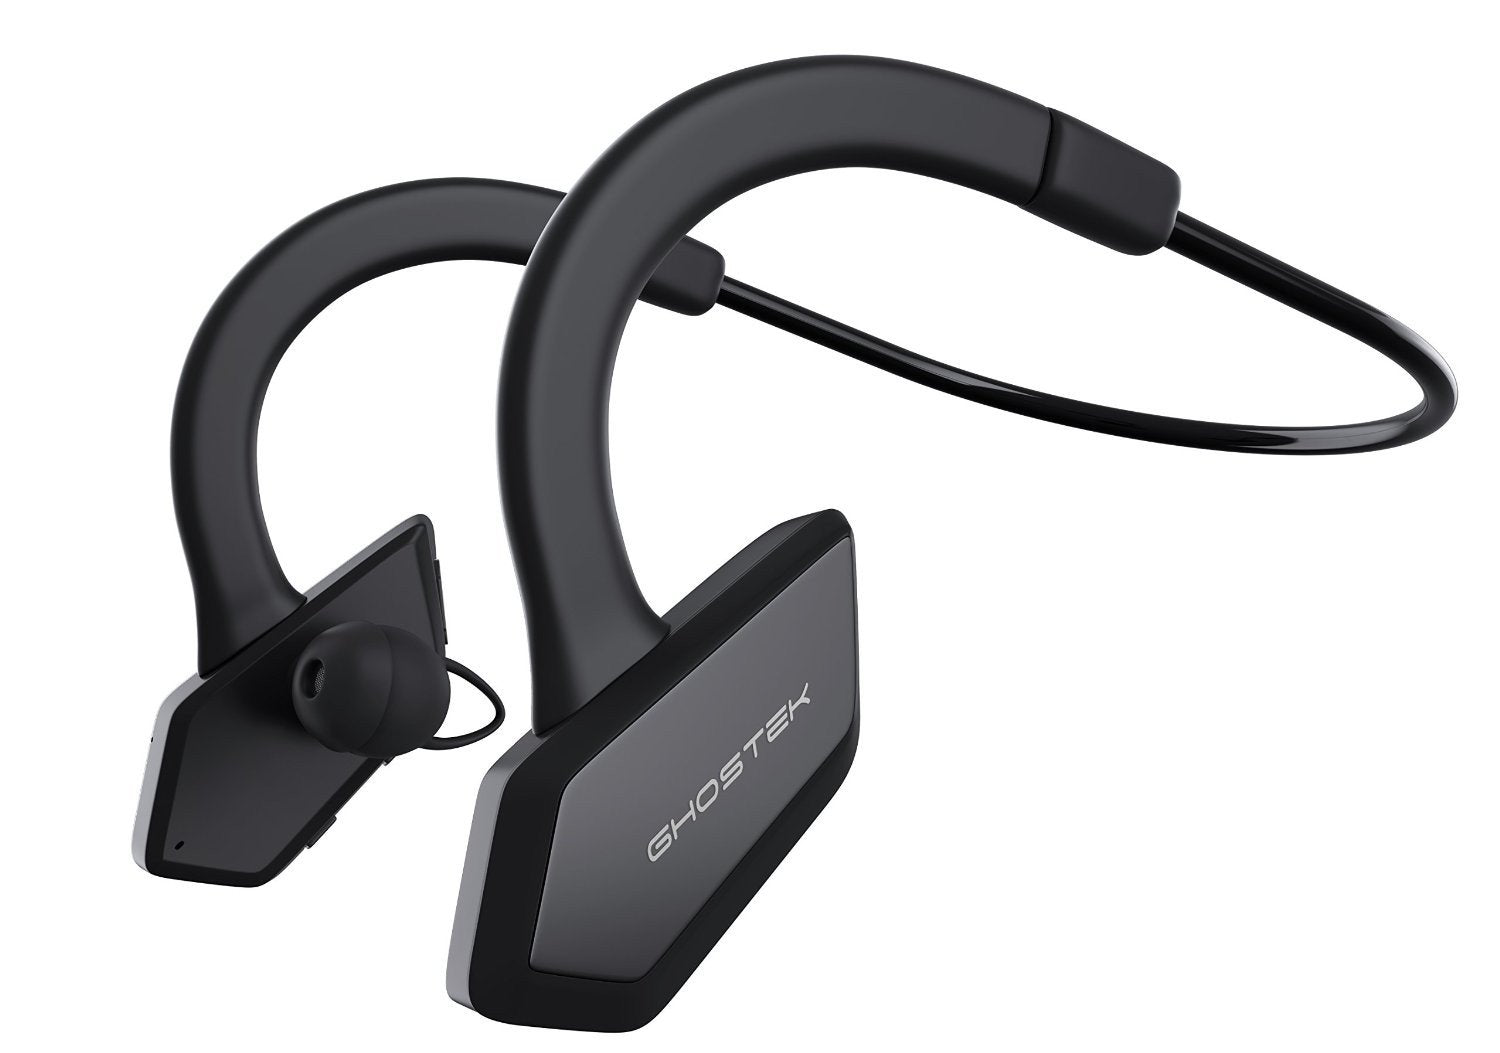 Headphones Bluetooth, Ghostek Earblades Black Sweatproof Bluetooth 4.1 Headphones Water Resistant